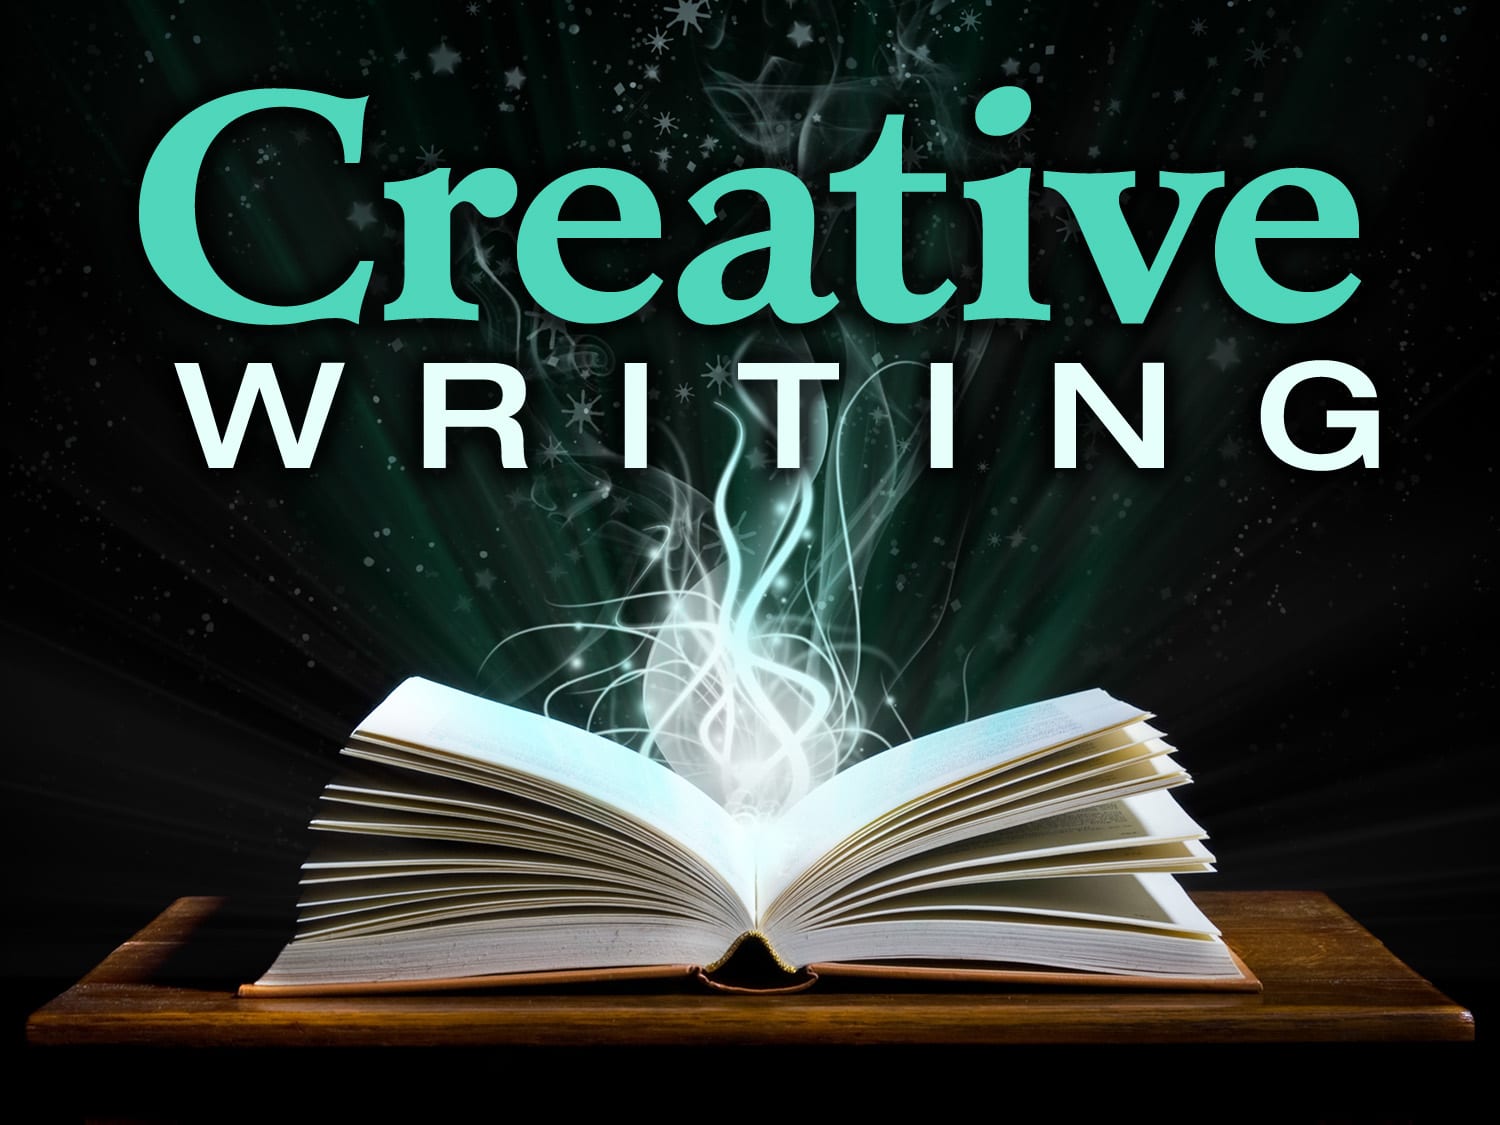 creative writing as an art